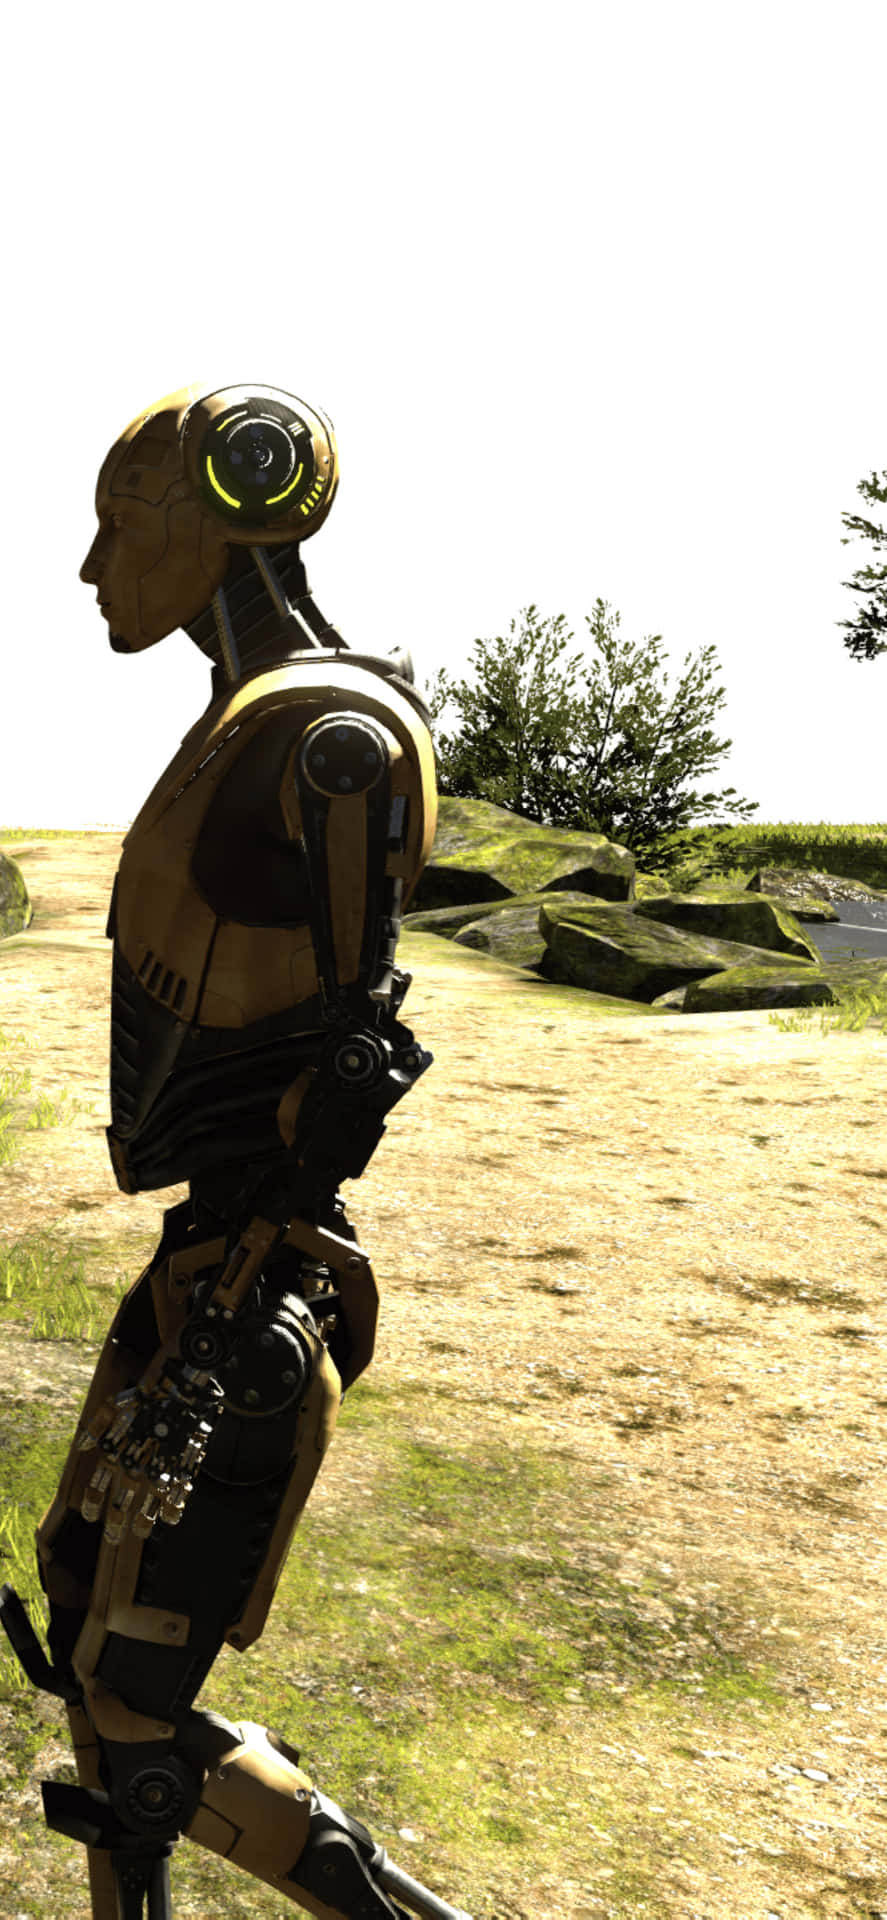 a robot is walking in a field